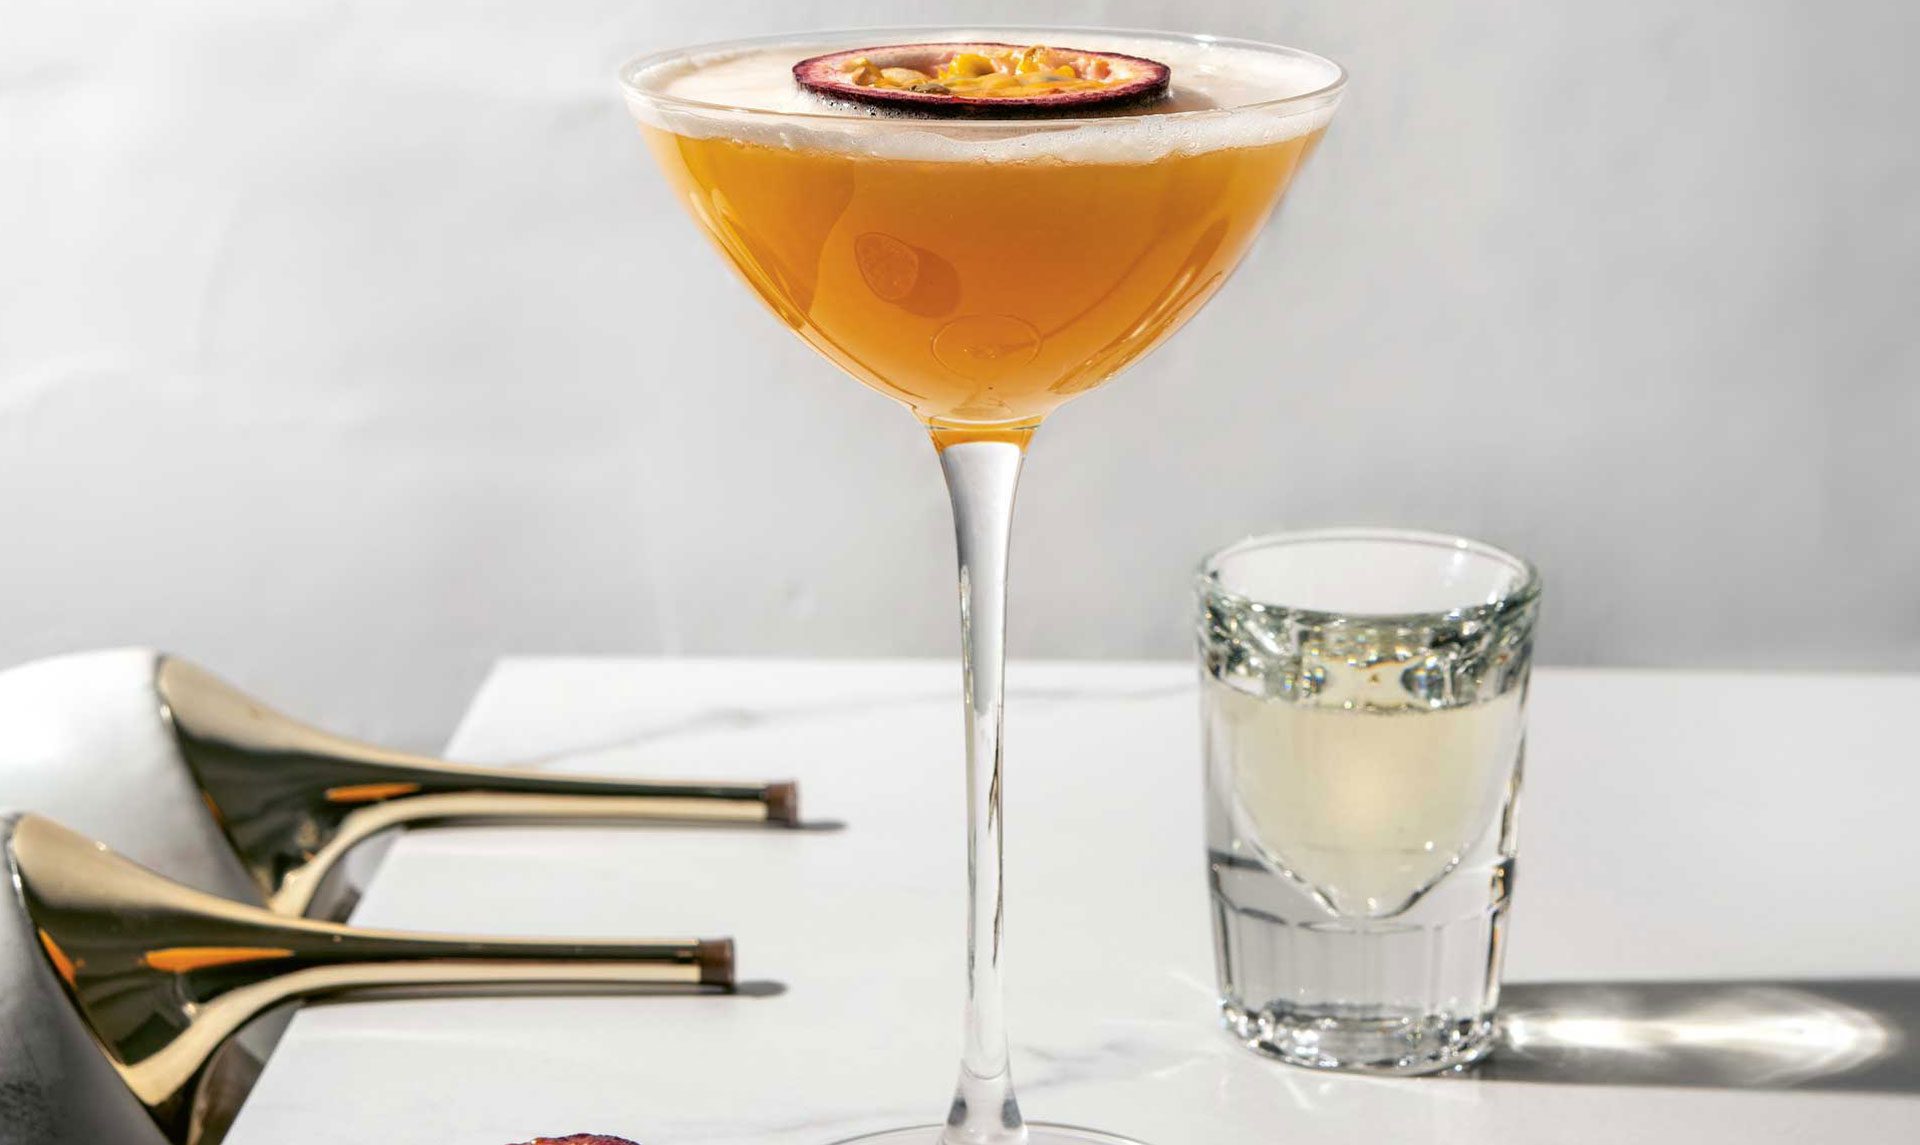 Der Porn Star Martini hat sich langsam zu einem der beliebtesten Cocktails der Welt entwickelt